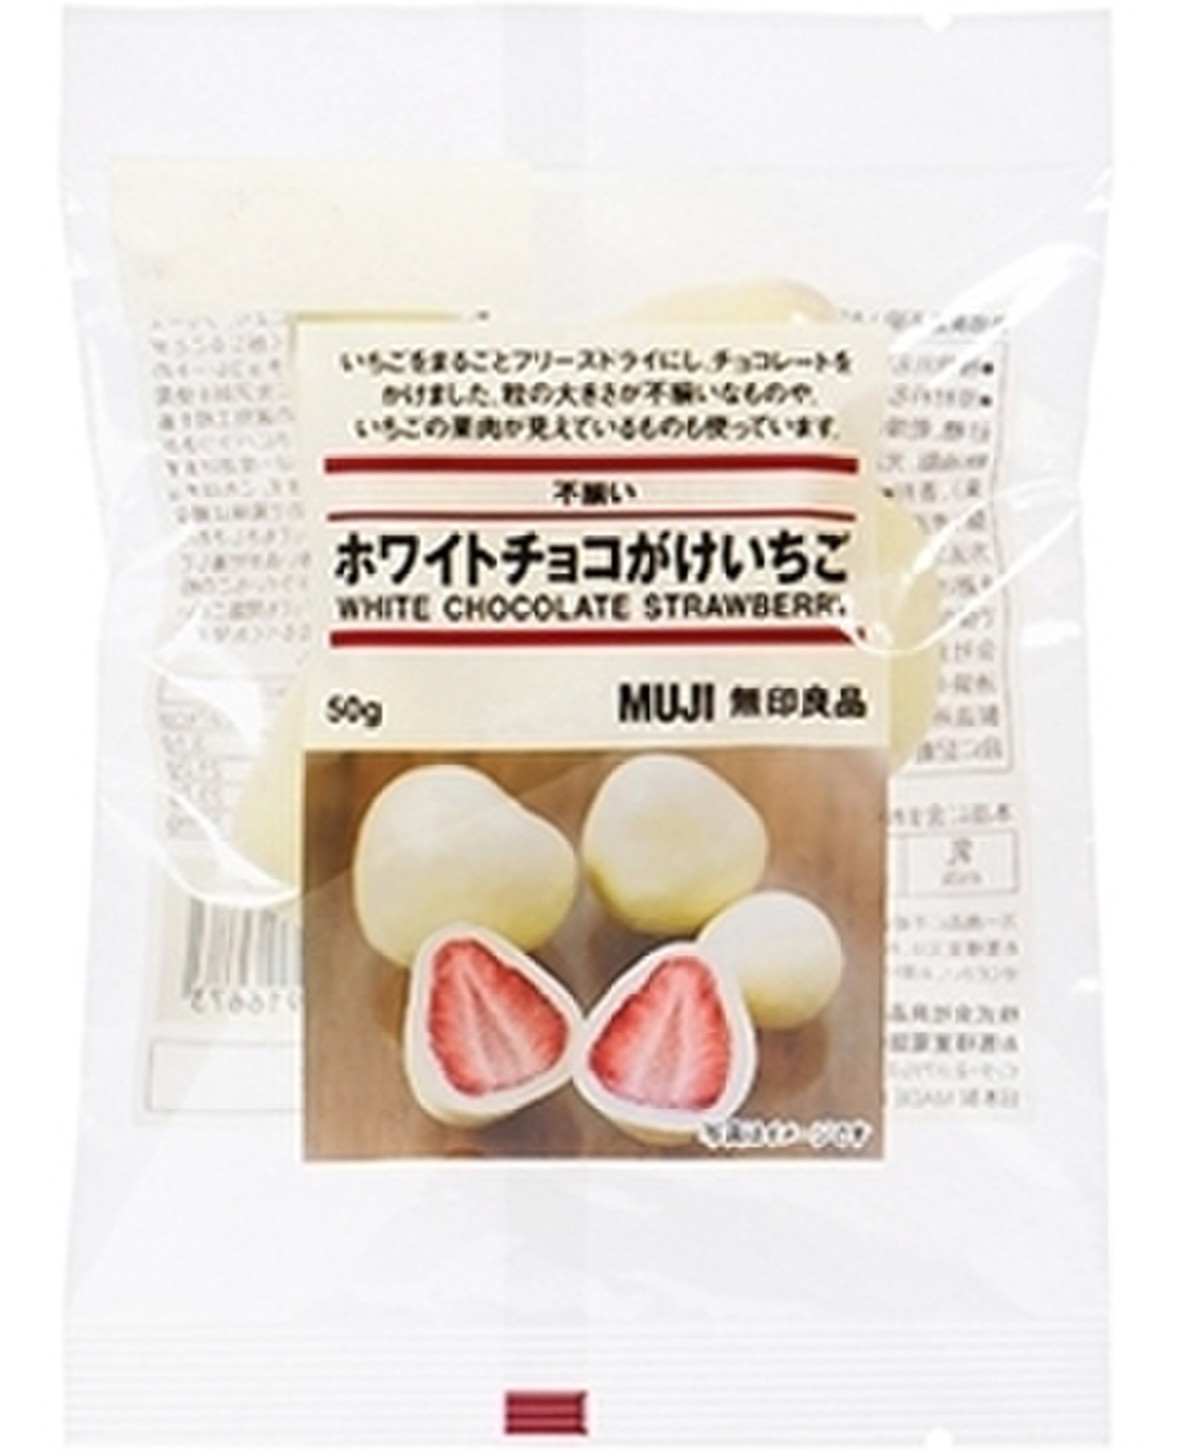 中評価 酸味と甘味 無印良品 不揃い ホワイトチョコがけいちご のクチコミ 評価 Satukiさん もぐナビ